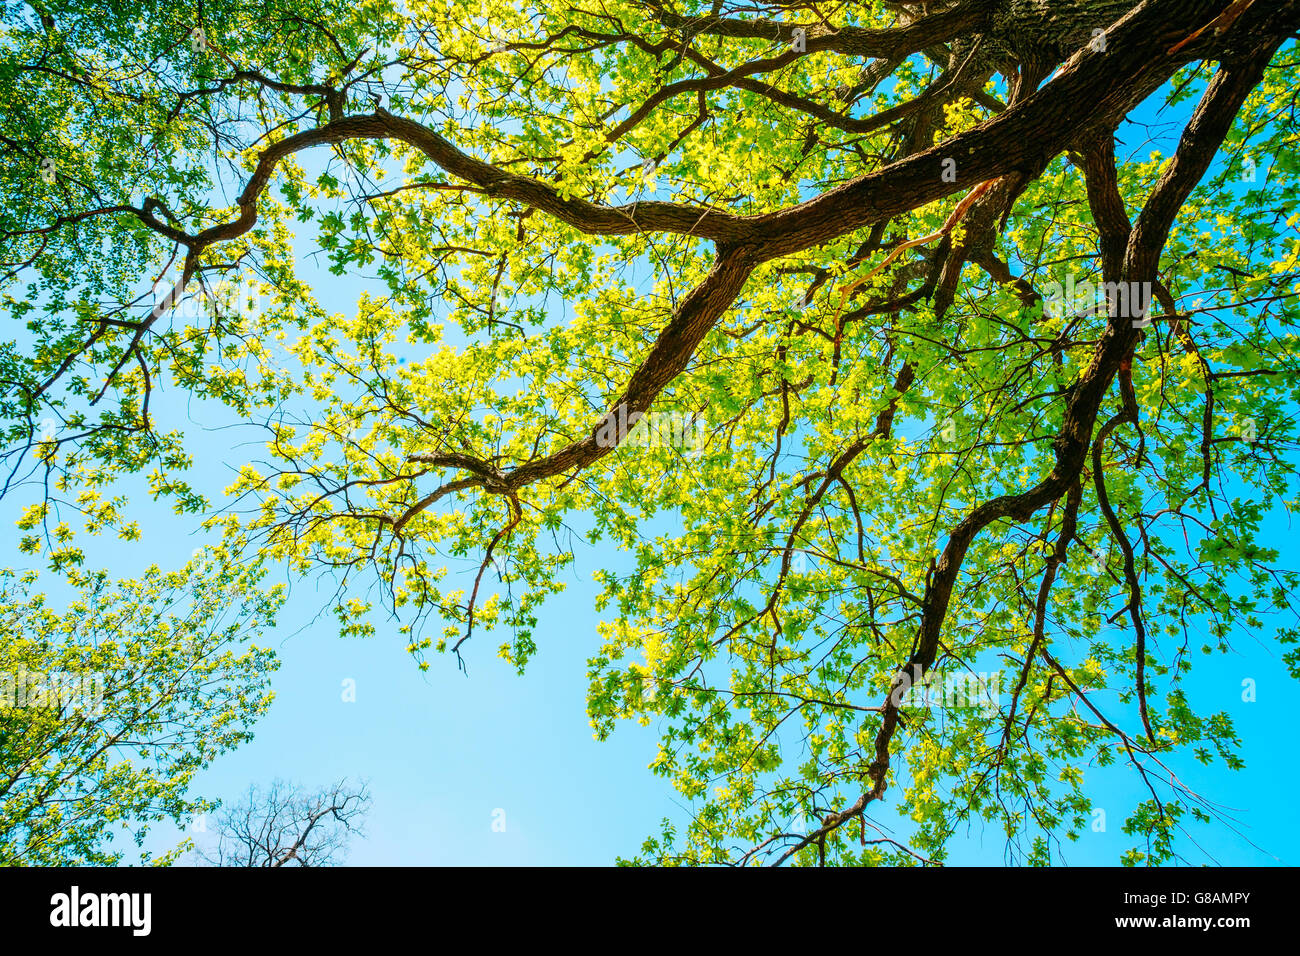 deciduous forest oak tree